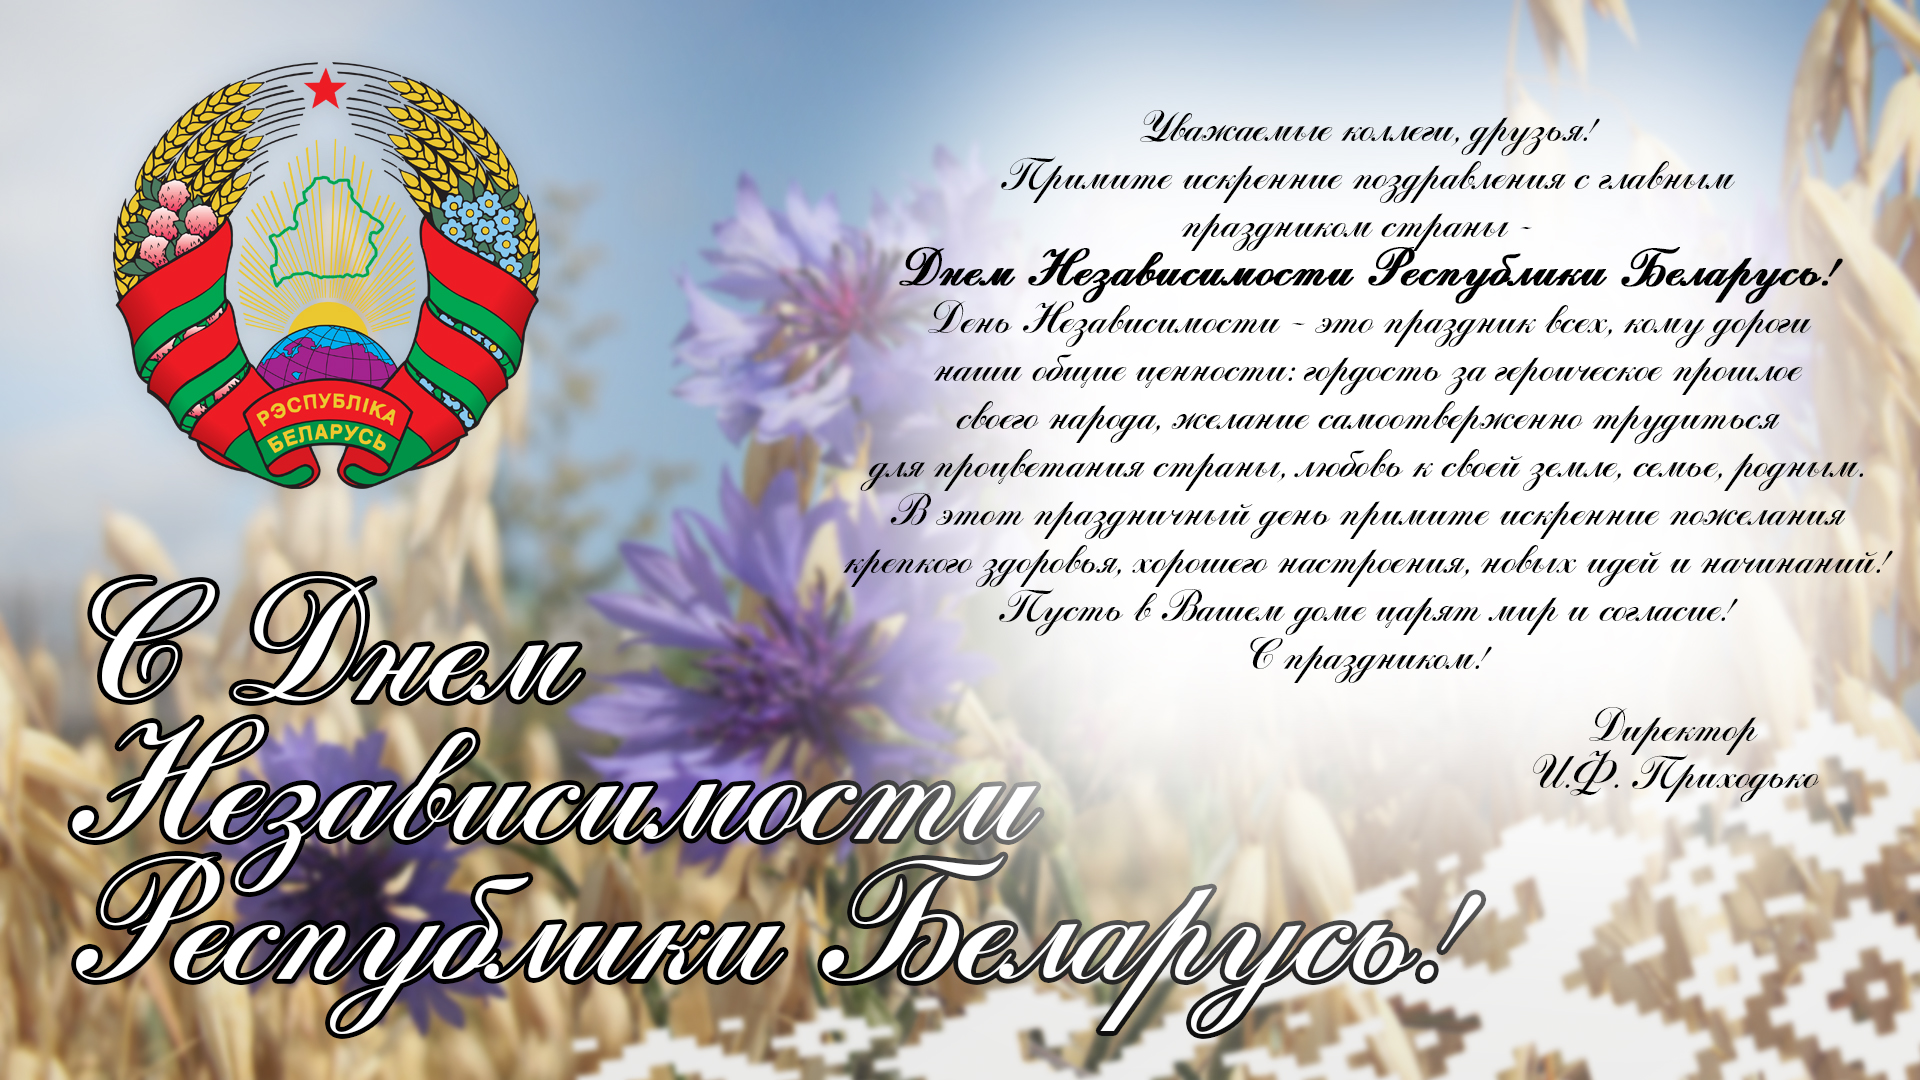 Картинки с поздравлениями белорусские. Поздравление с днем независимости. День независимости Беларуси открытки. Поздравление с днем независимости официальное. Поздравление с днем независимости РБ.